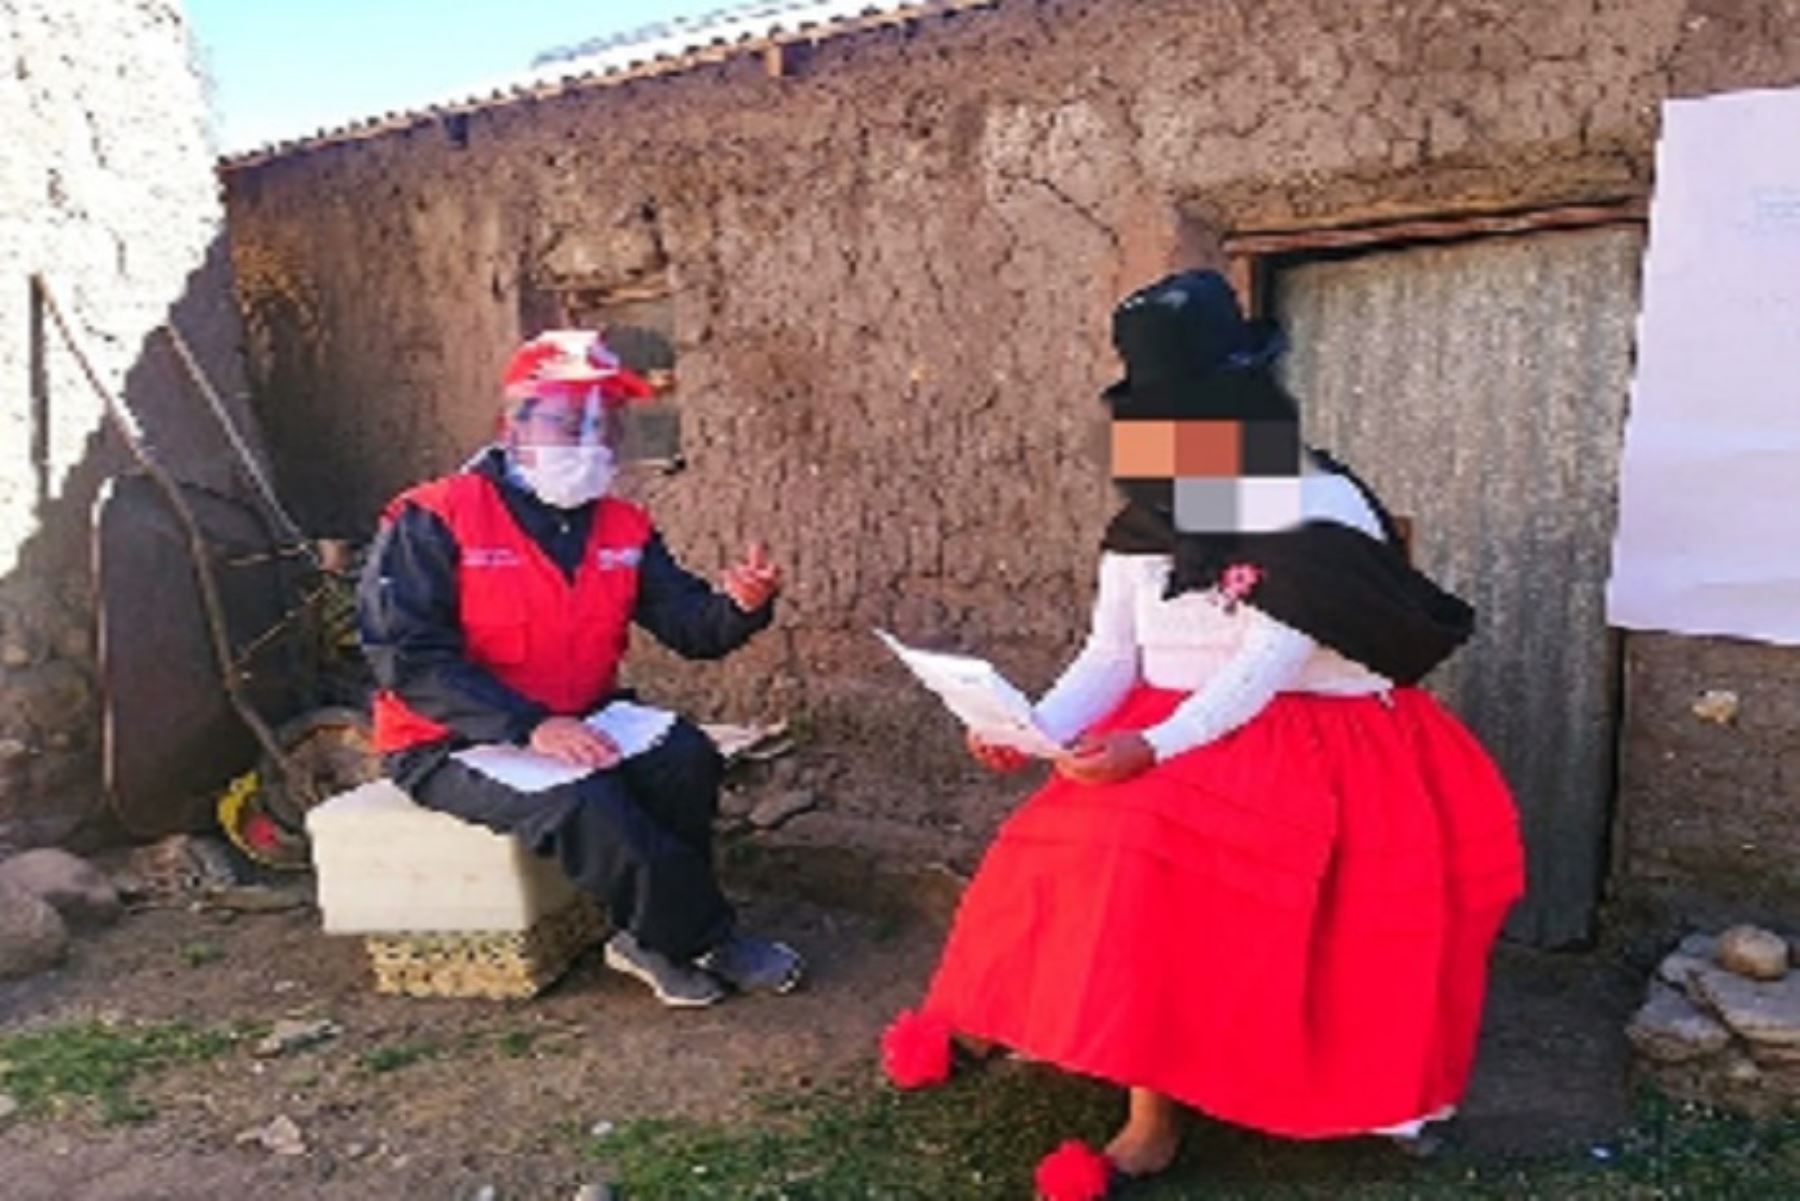 Los profesionales de la ‘Estrategia Rural’, liderada por el Programa Nacional Aurora, llegaron hasta las comunidades los pueblos indígenas quechua, Aimara, Awajún, Kichua, Kukama-kukamiria, Iñapari, Asháninka, Bora, Wampis, donde atendieron a 113 víctimas de violencia familiar.